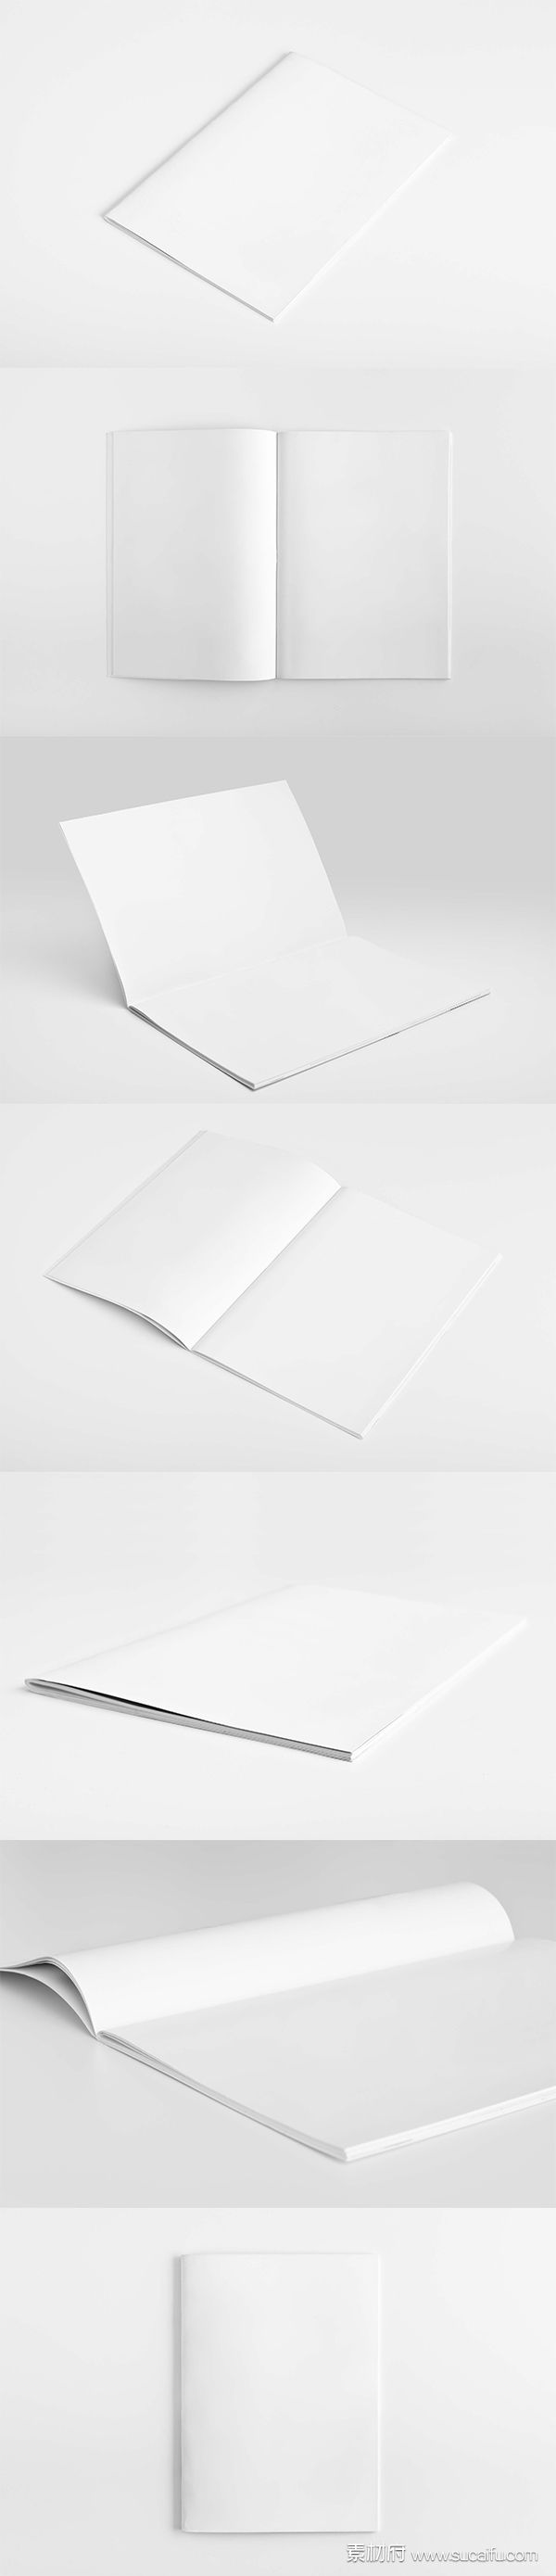 一组竖版空白画册展示模板PSD分层素材